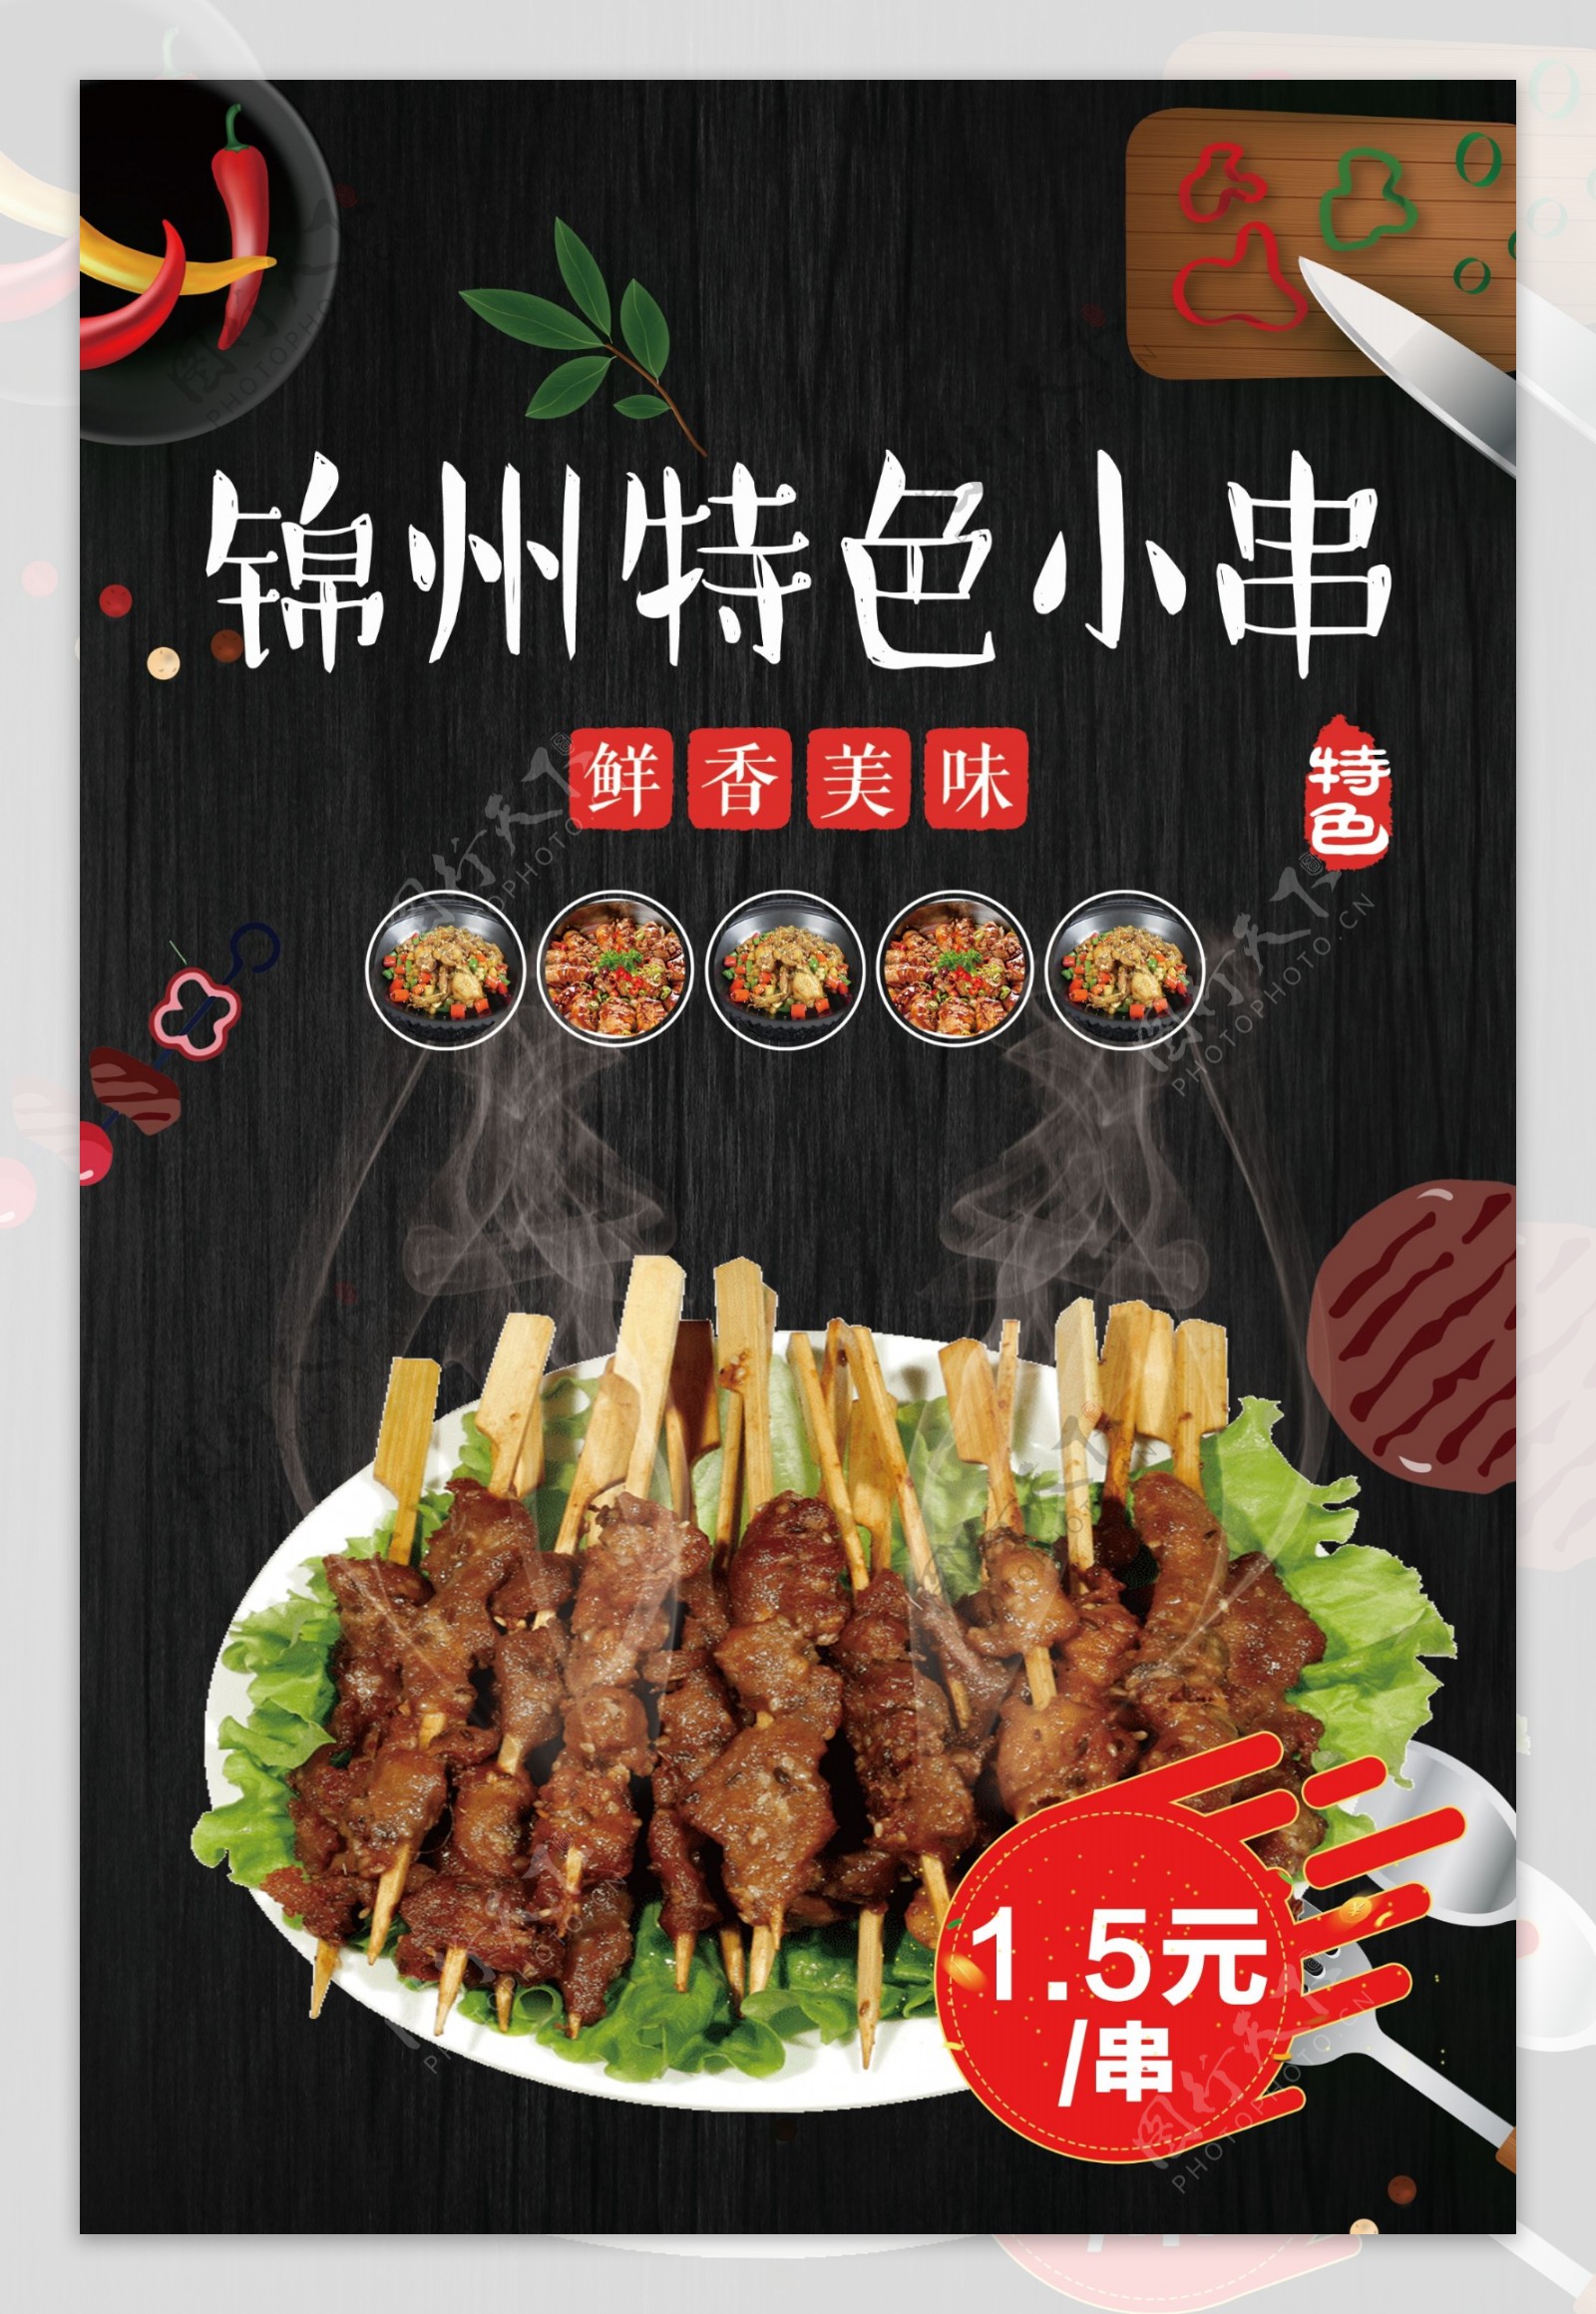 锦州特色小串烧烤店饭店印刷单页灯箱海报